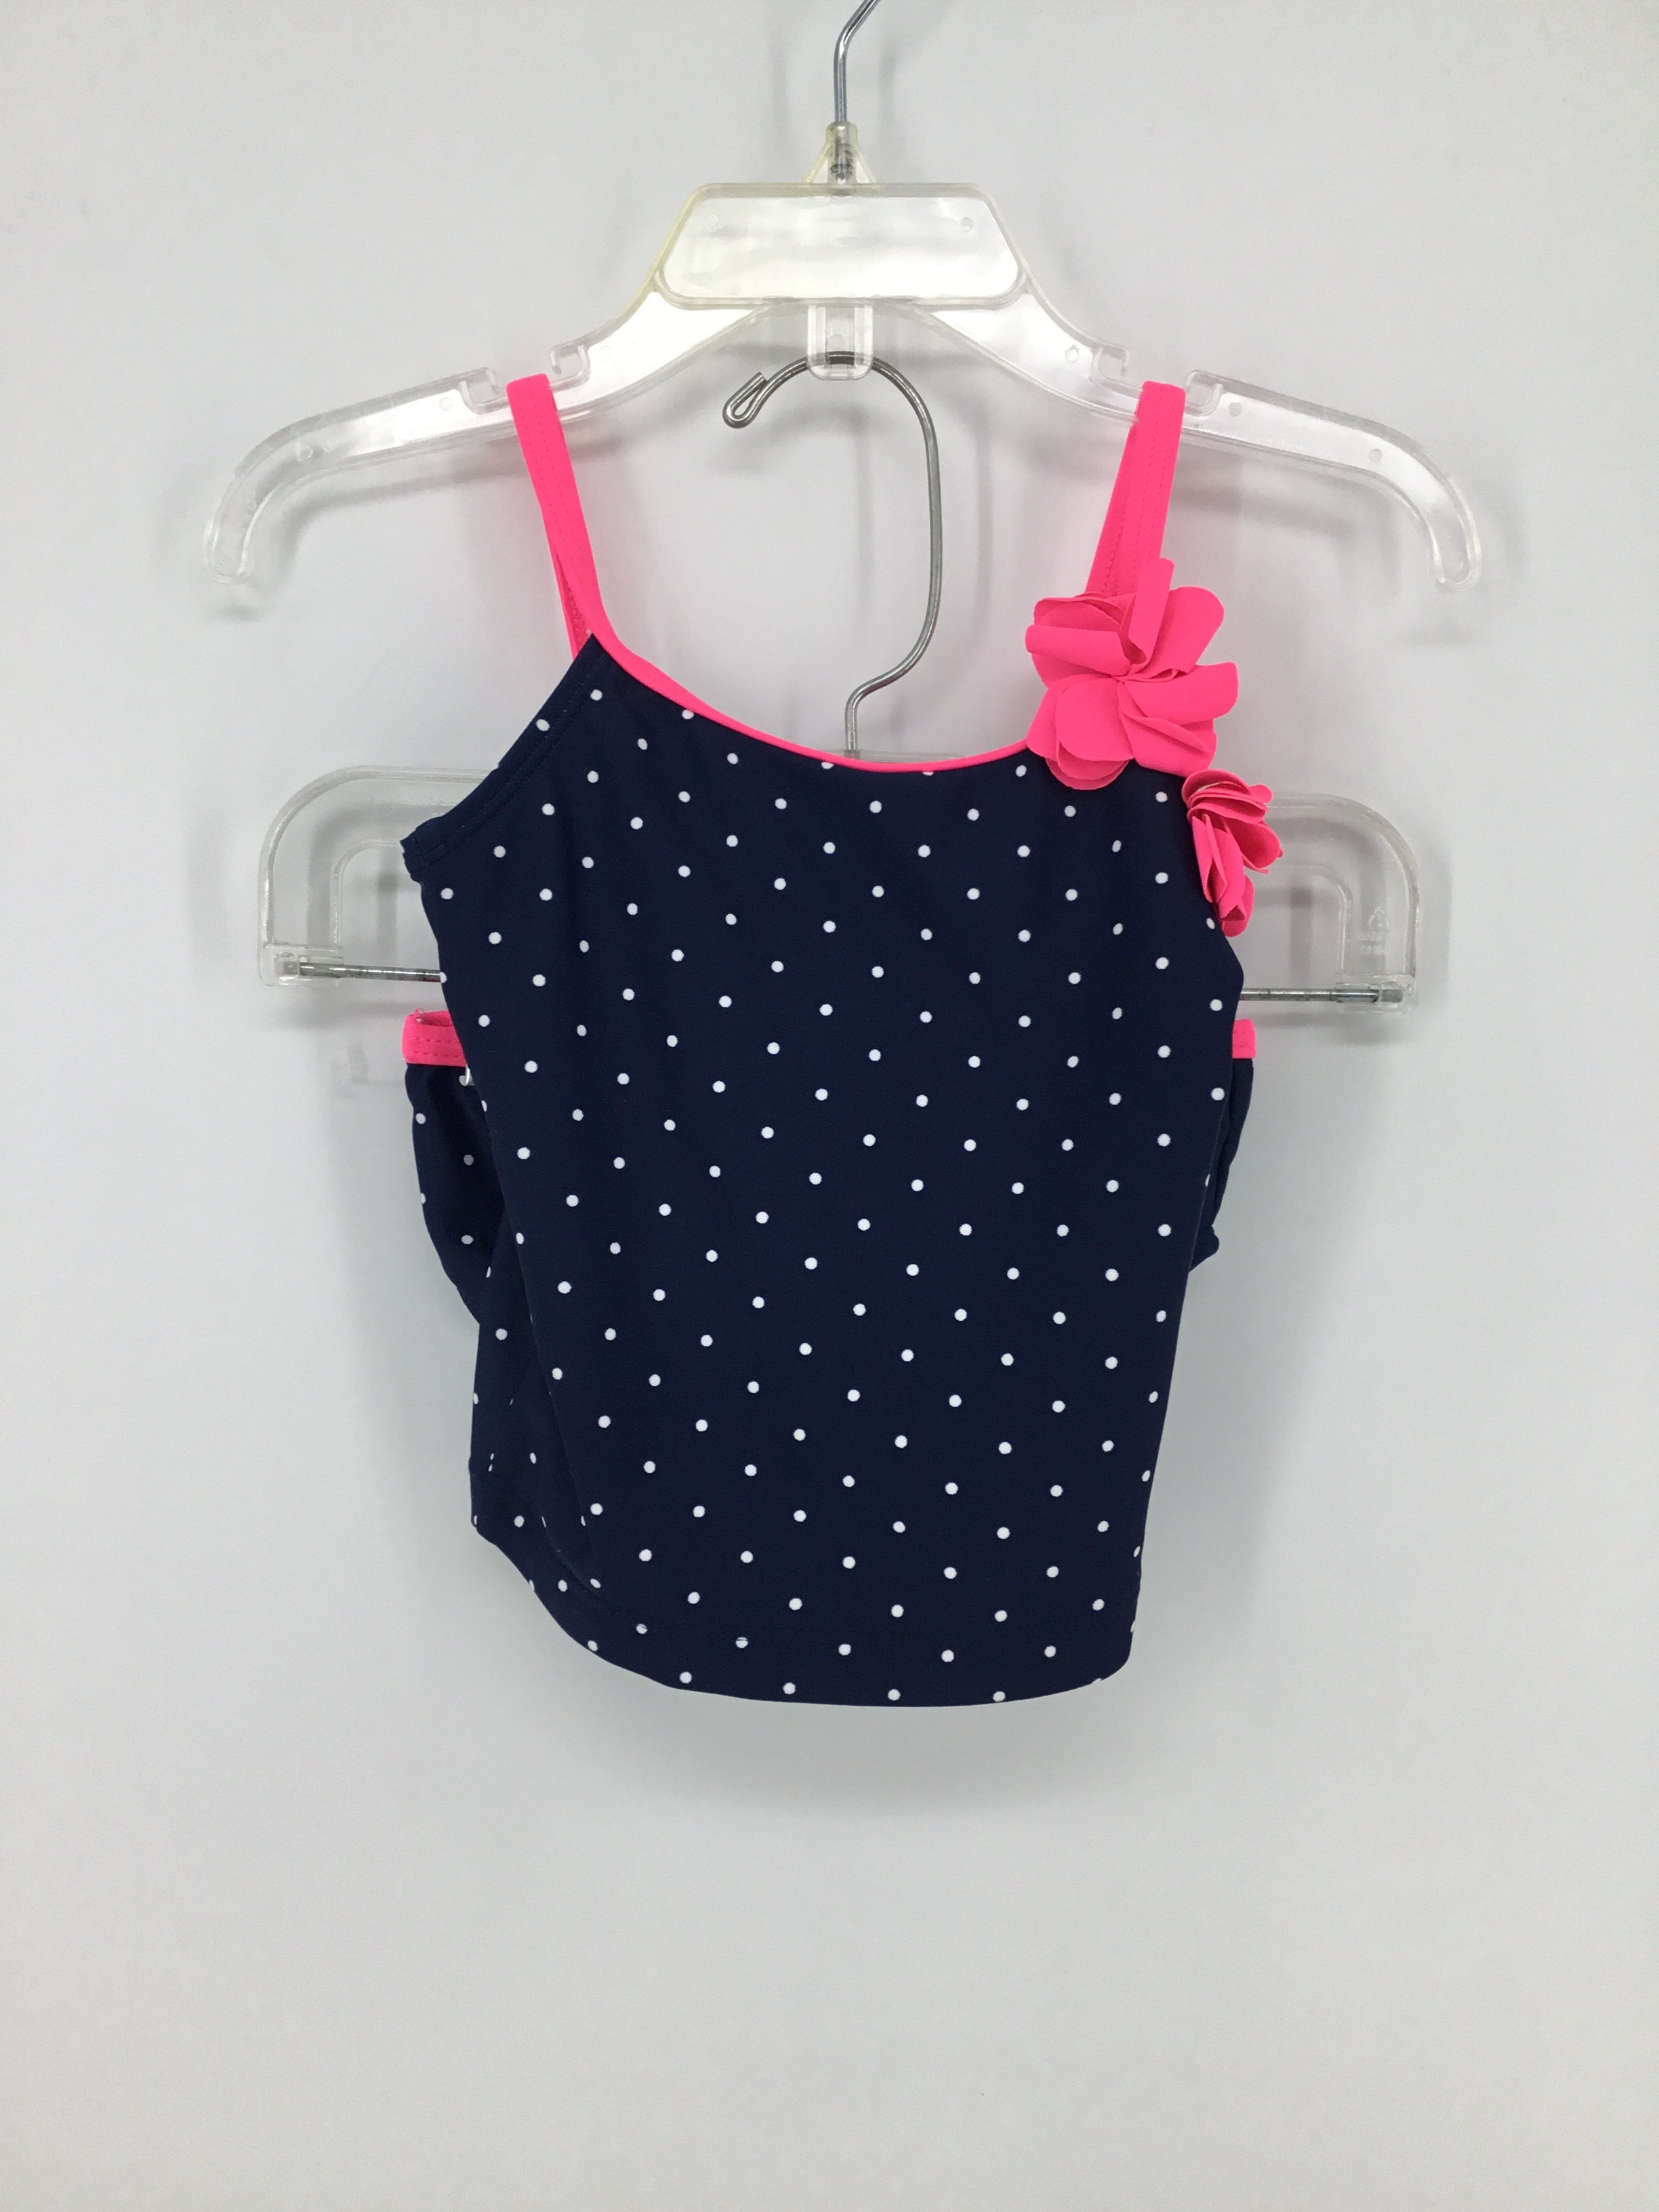 OshKosh B'gosh Child Size 9-12 Months Navy Swimwear - girls